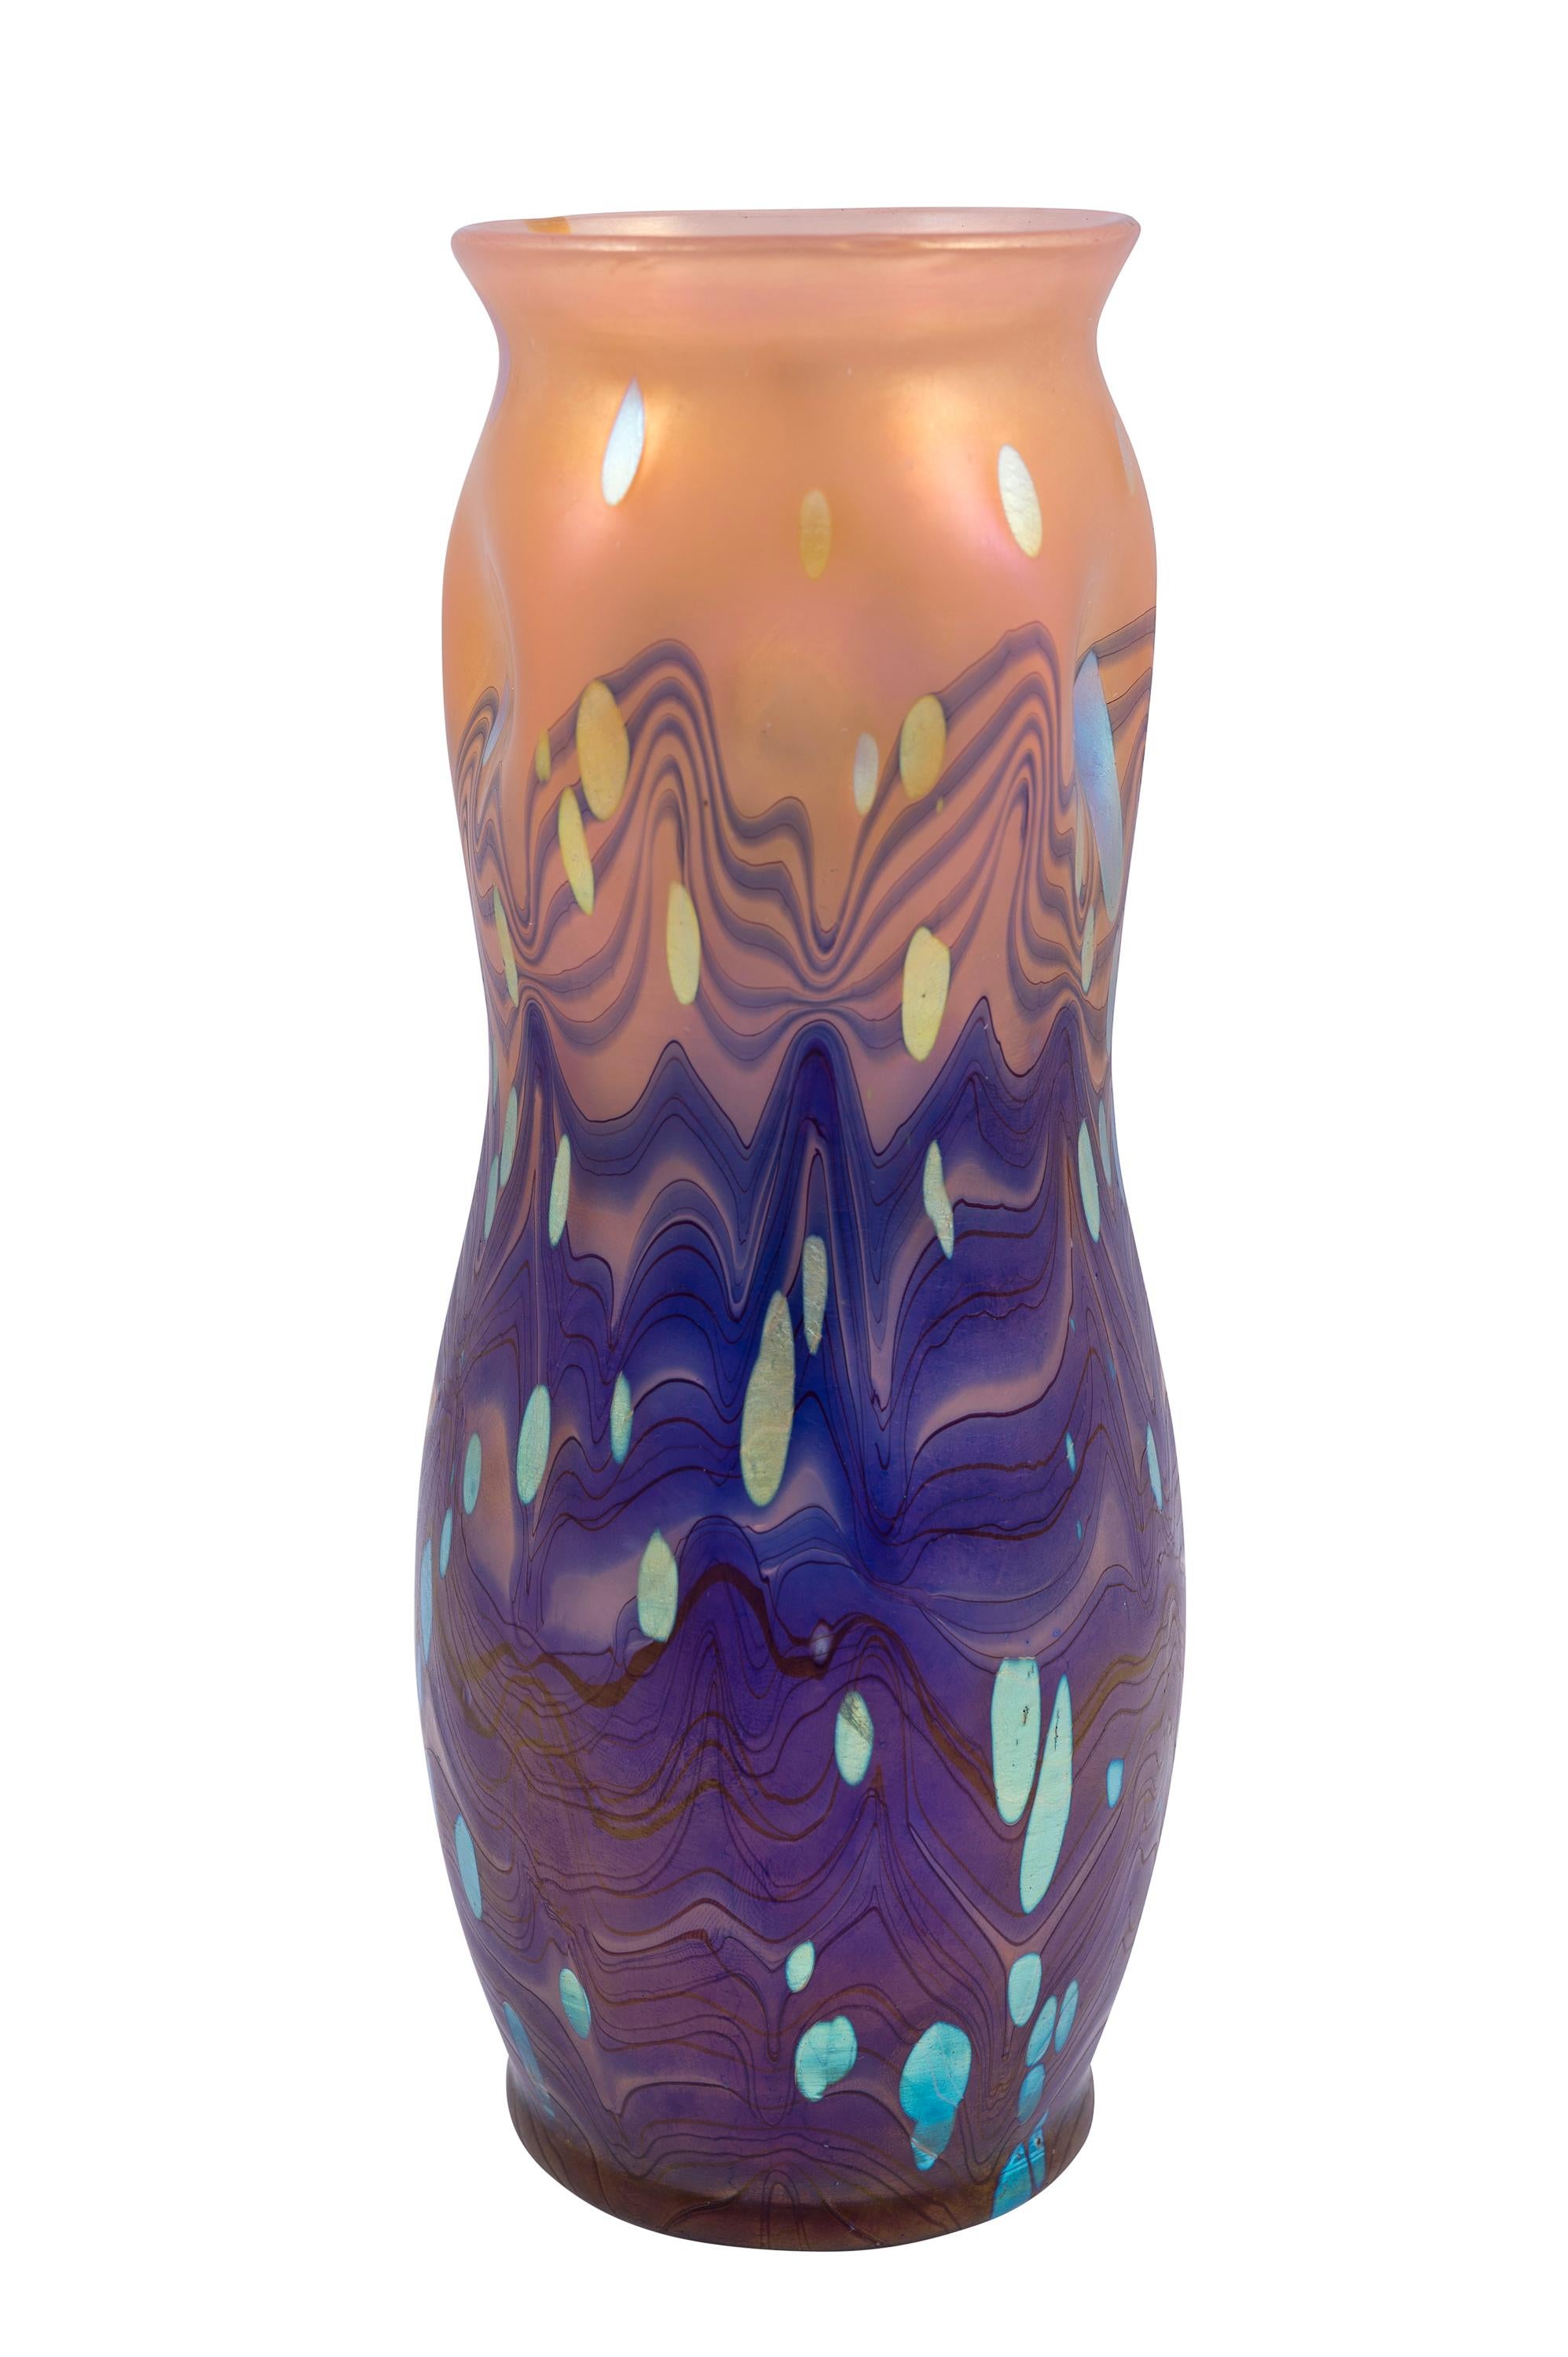 Austrian Jugendstil, floral glass vase, manufactured by Johann Loetz Witwe, red, green, orange, gold, circa 1902, 